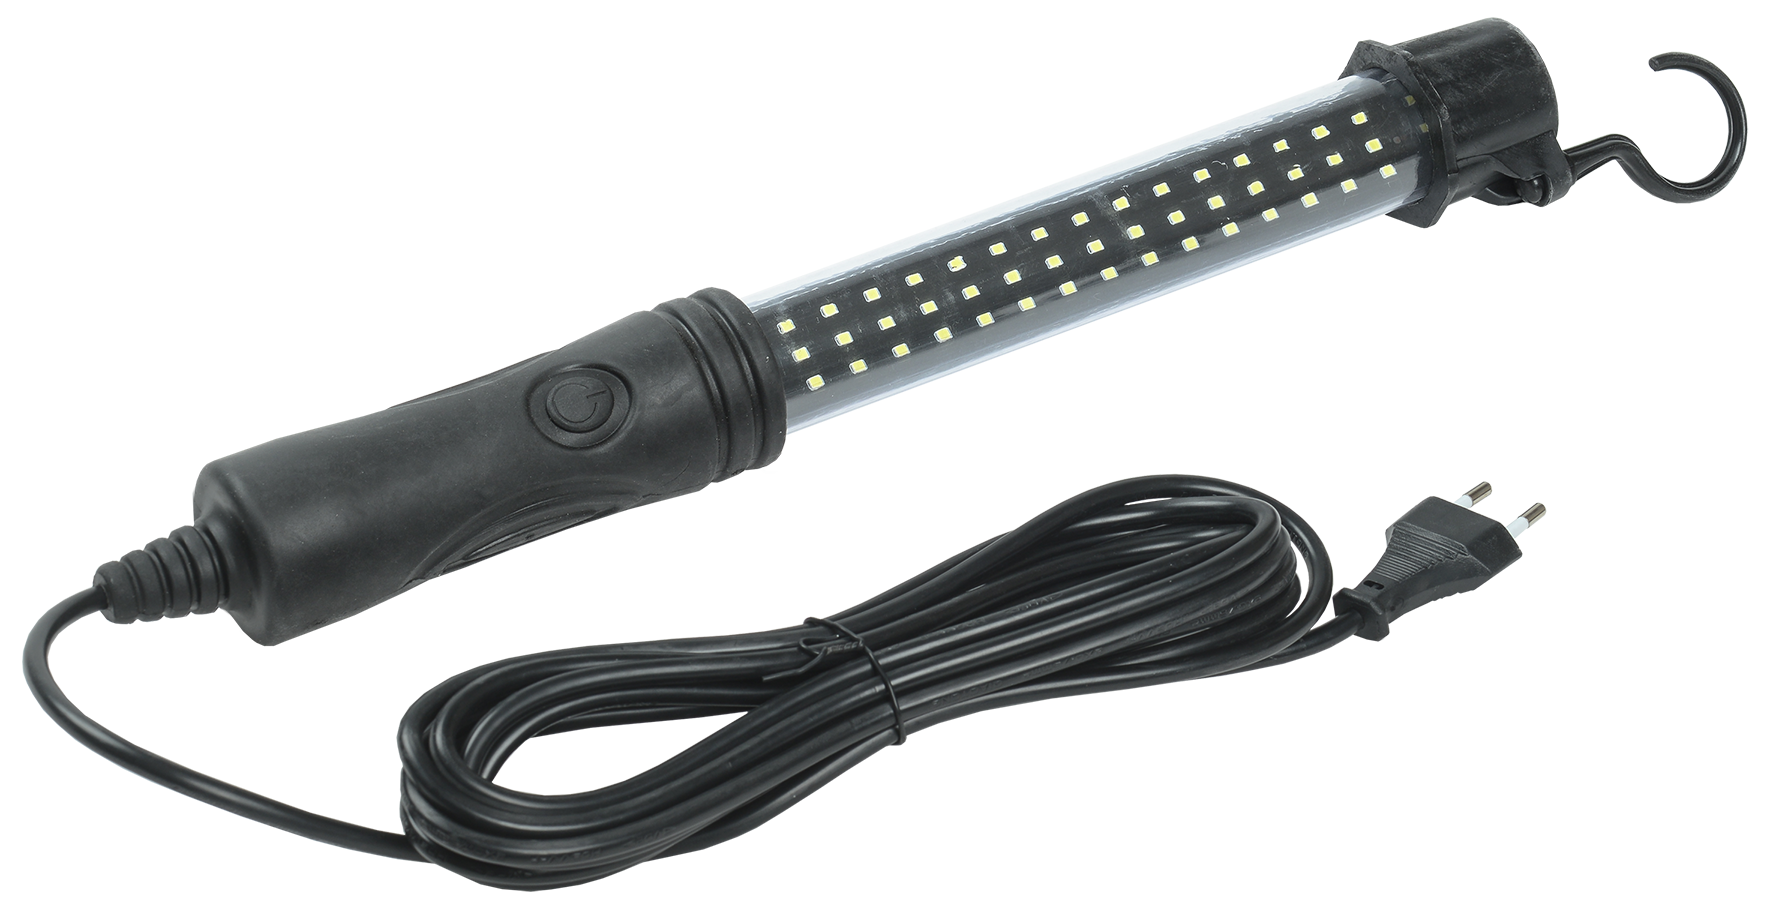 Светильник LED переносной ДРО 2061 IP54 шнур 5м черный IEK